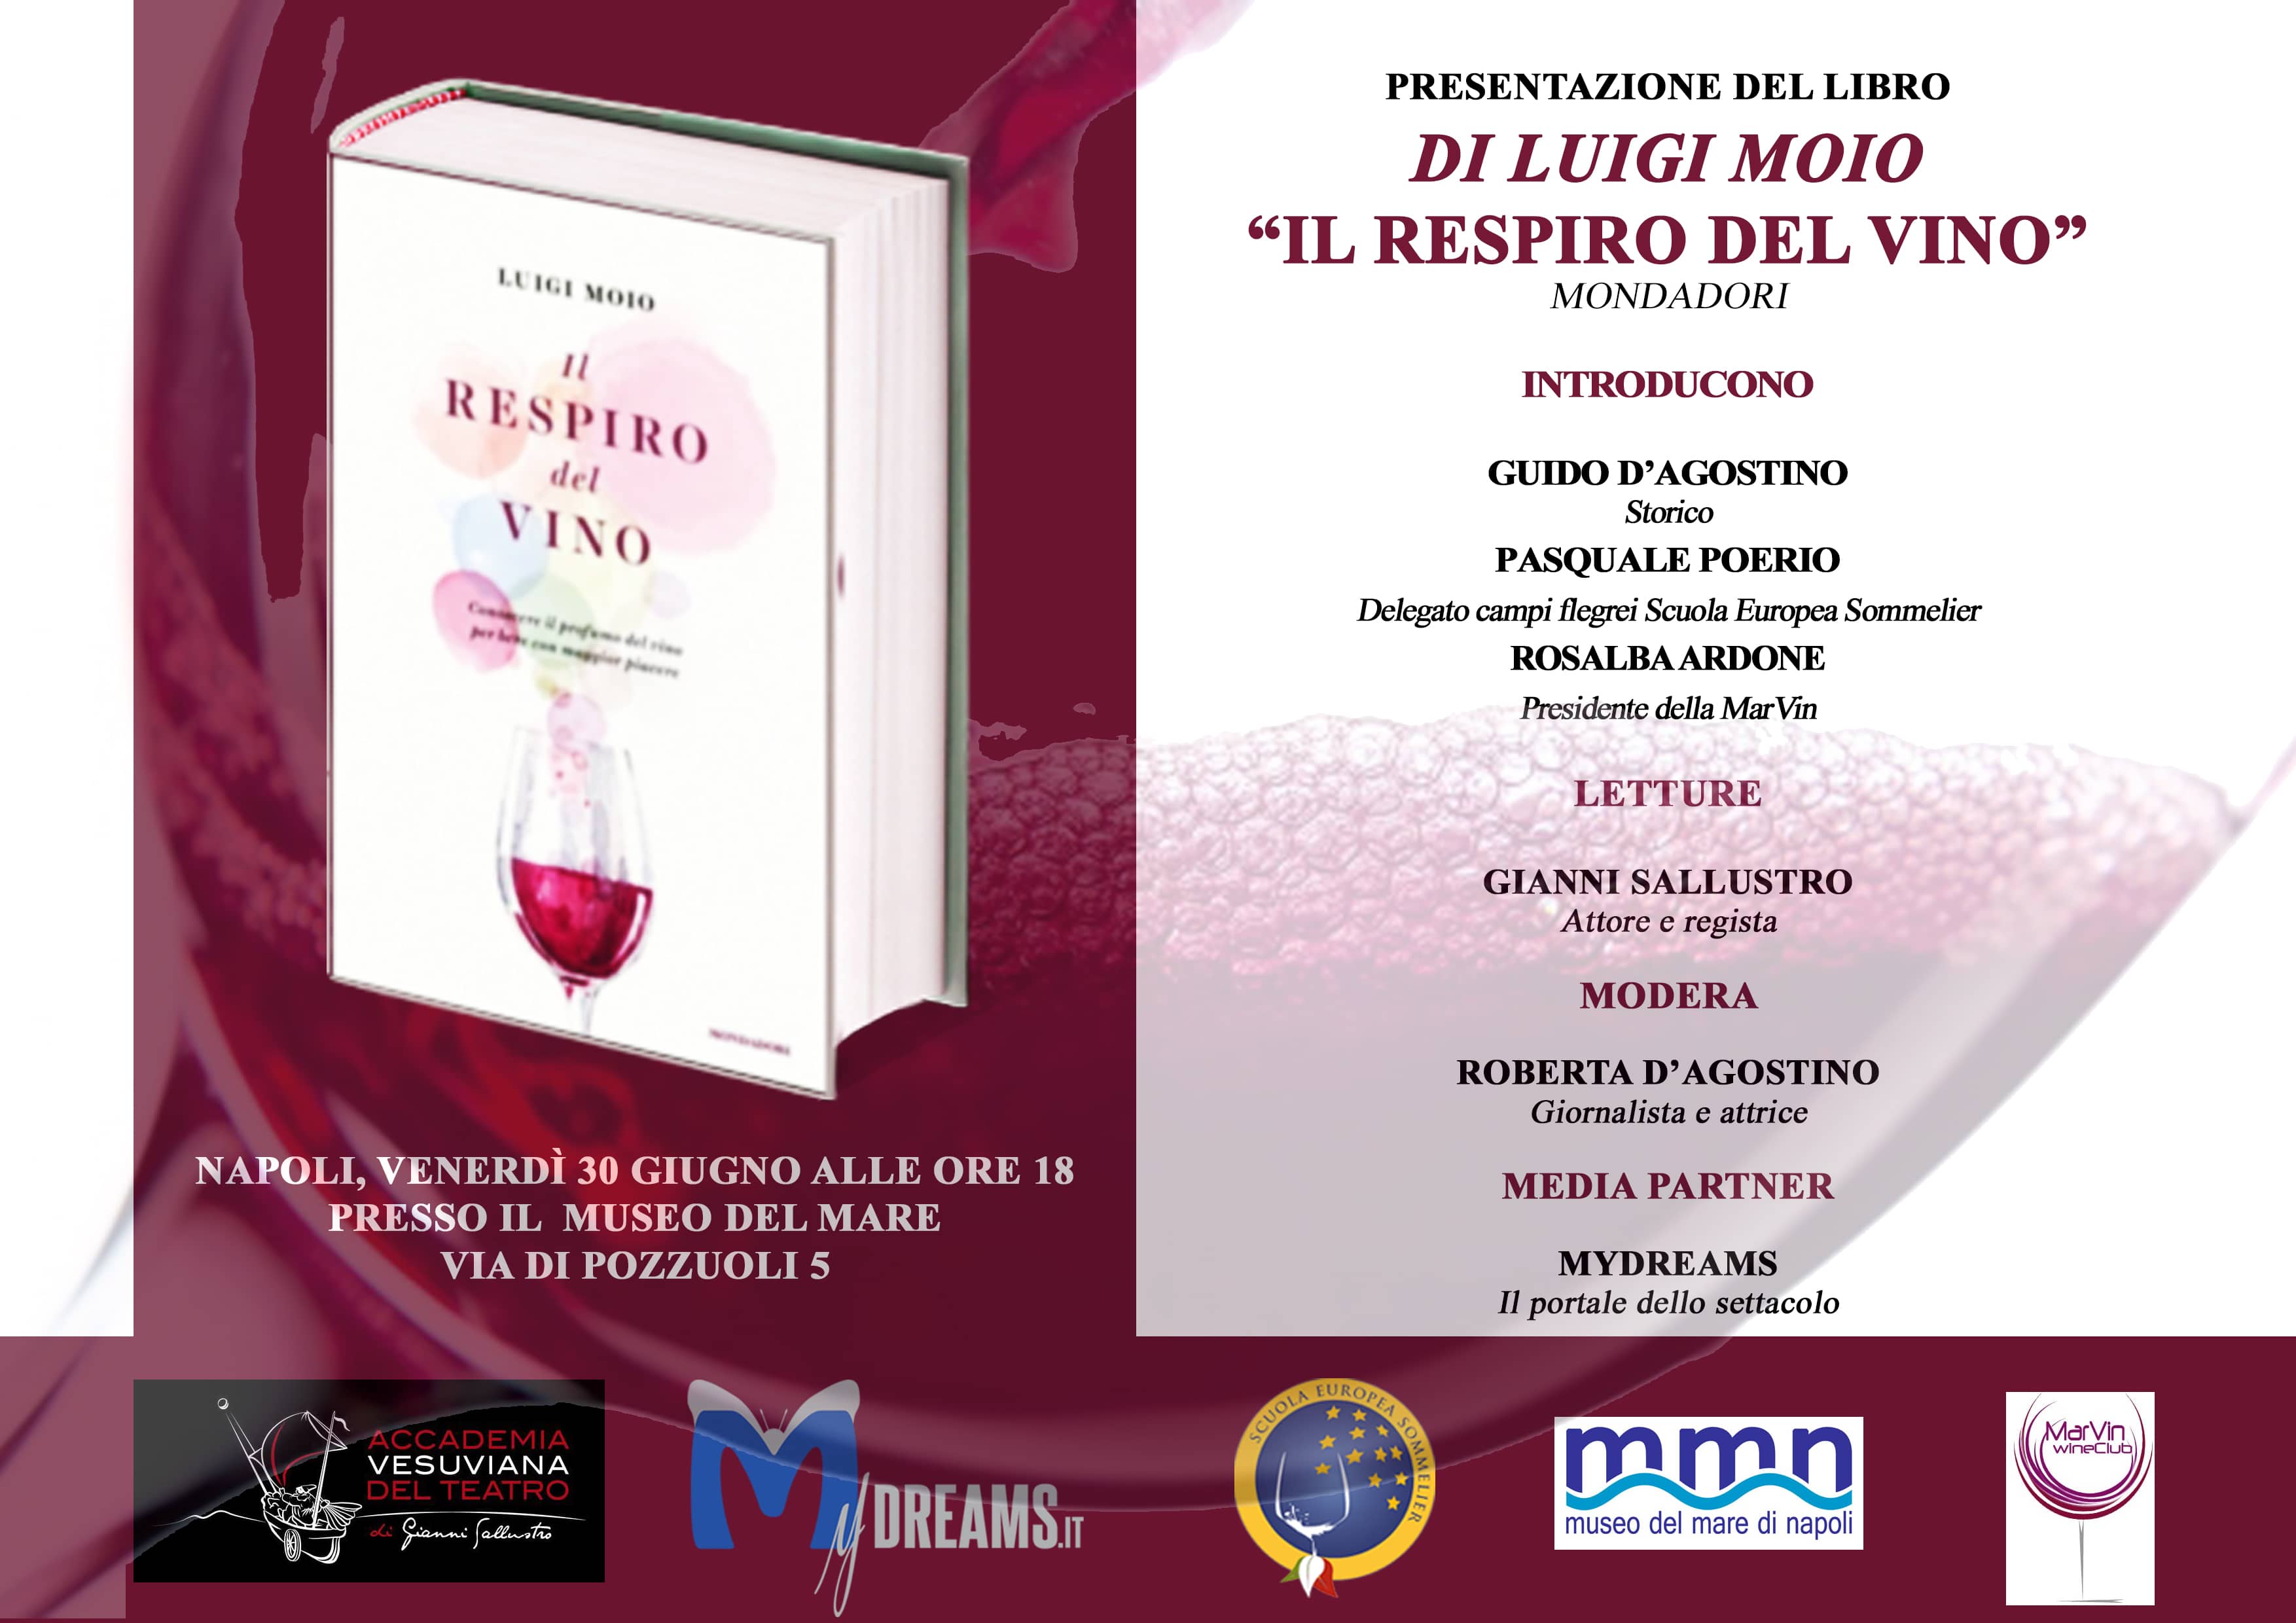 Il Respiro del vino”, Luigi Moio presenta il suo ultimo libro a Catania –  Barone di Villagrande